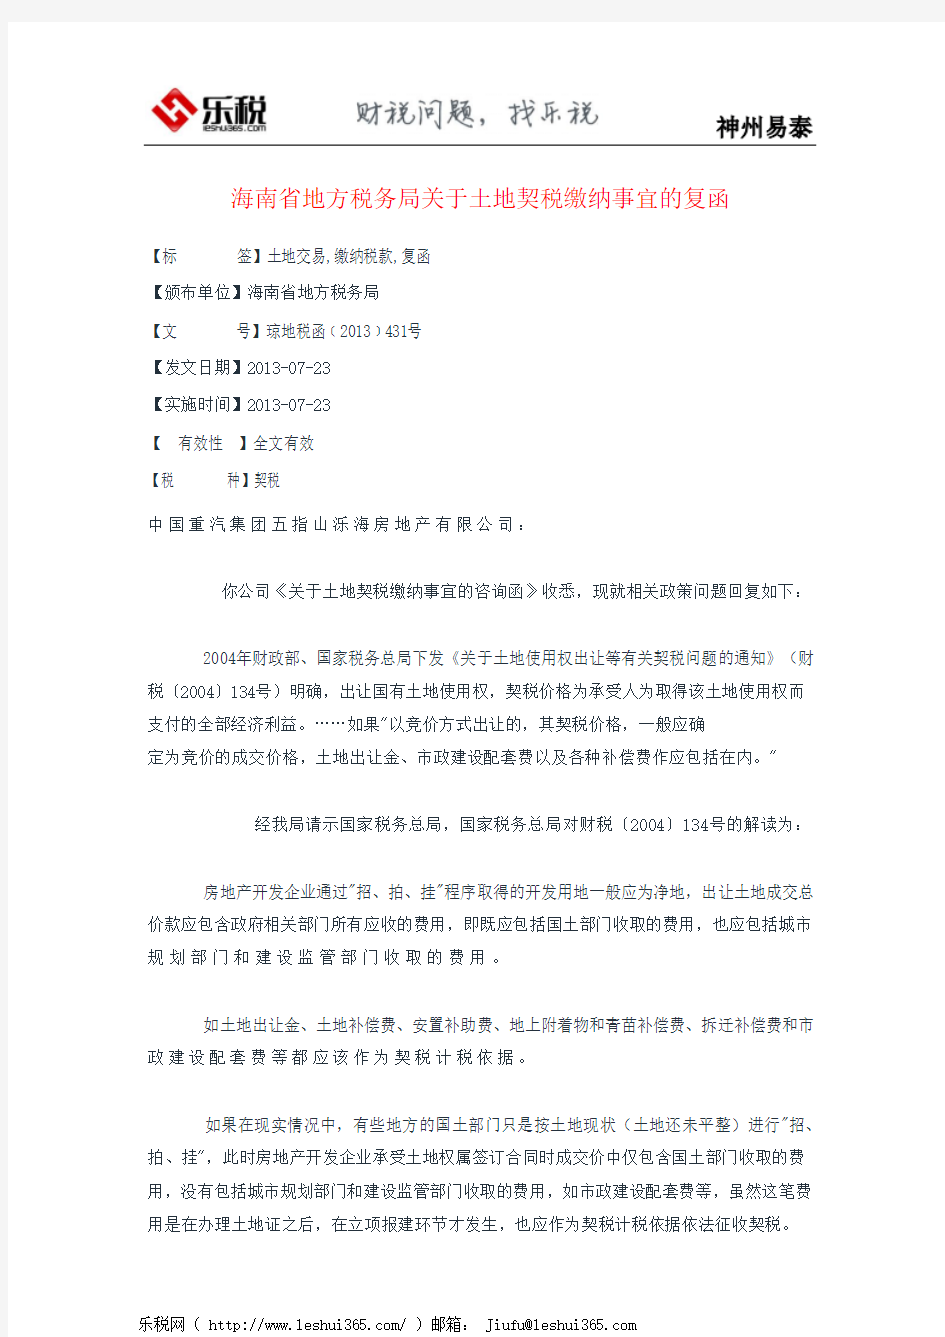 海南省地方税务局关于土地契税缴纳事宜的复函